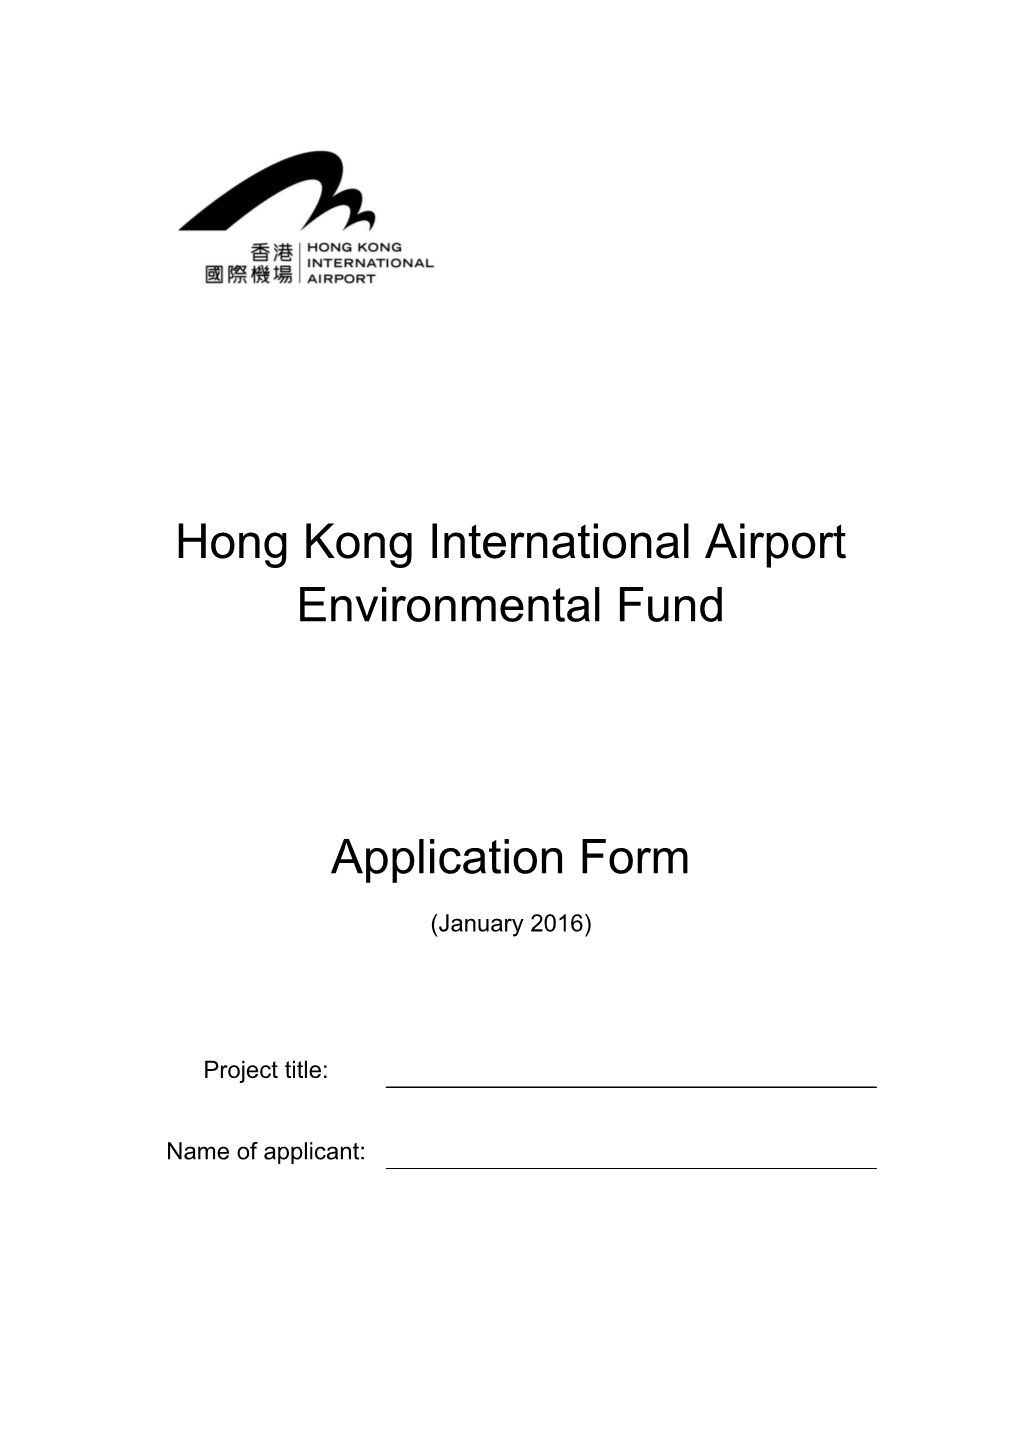 Hong Kong International Airport Environmental Fund